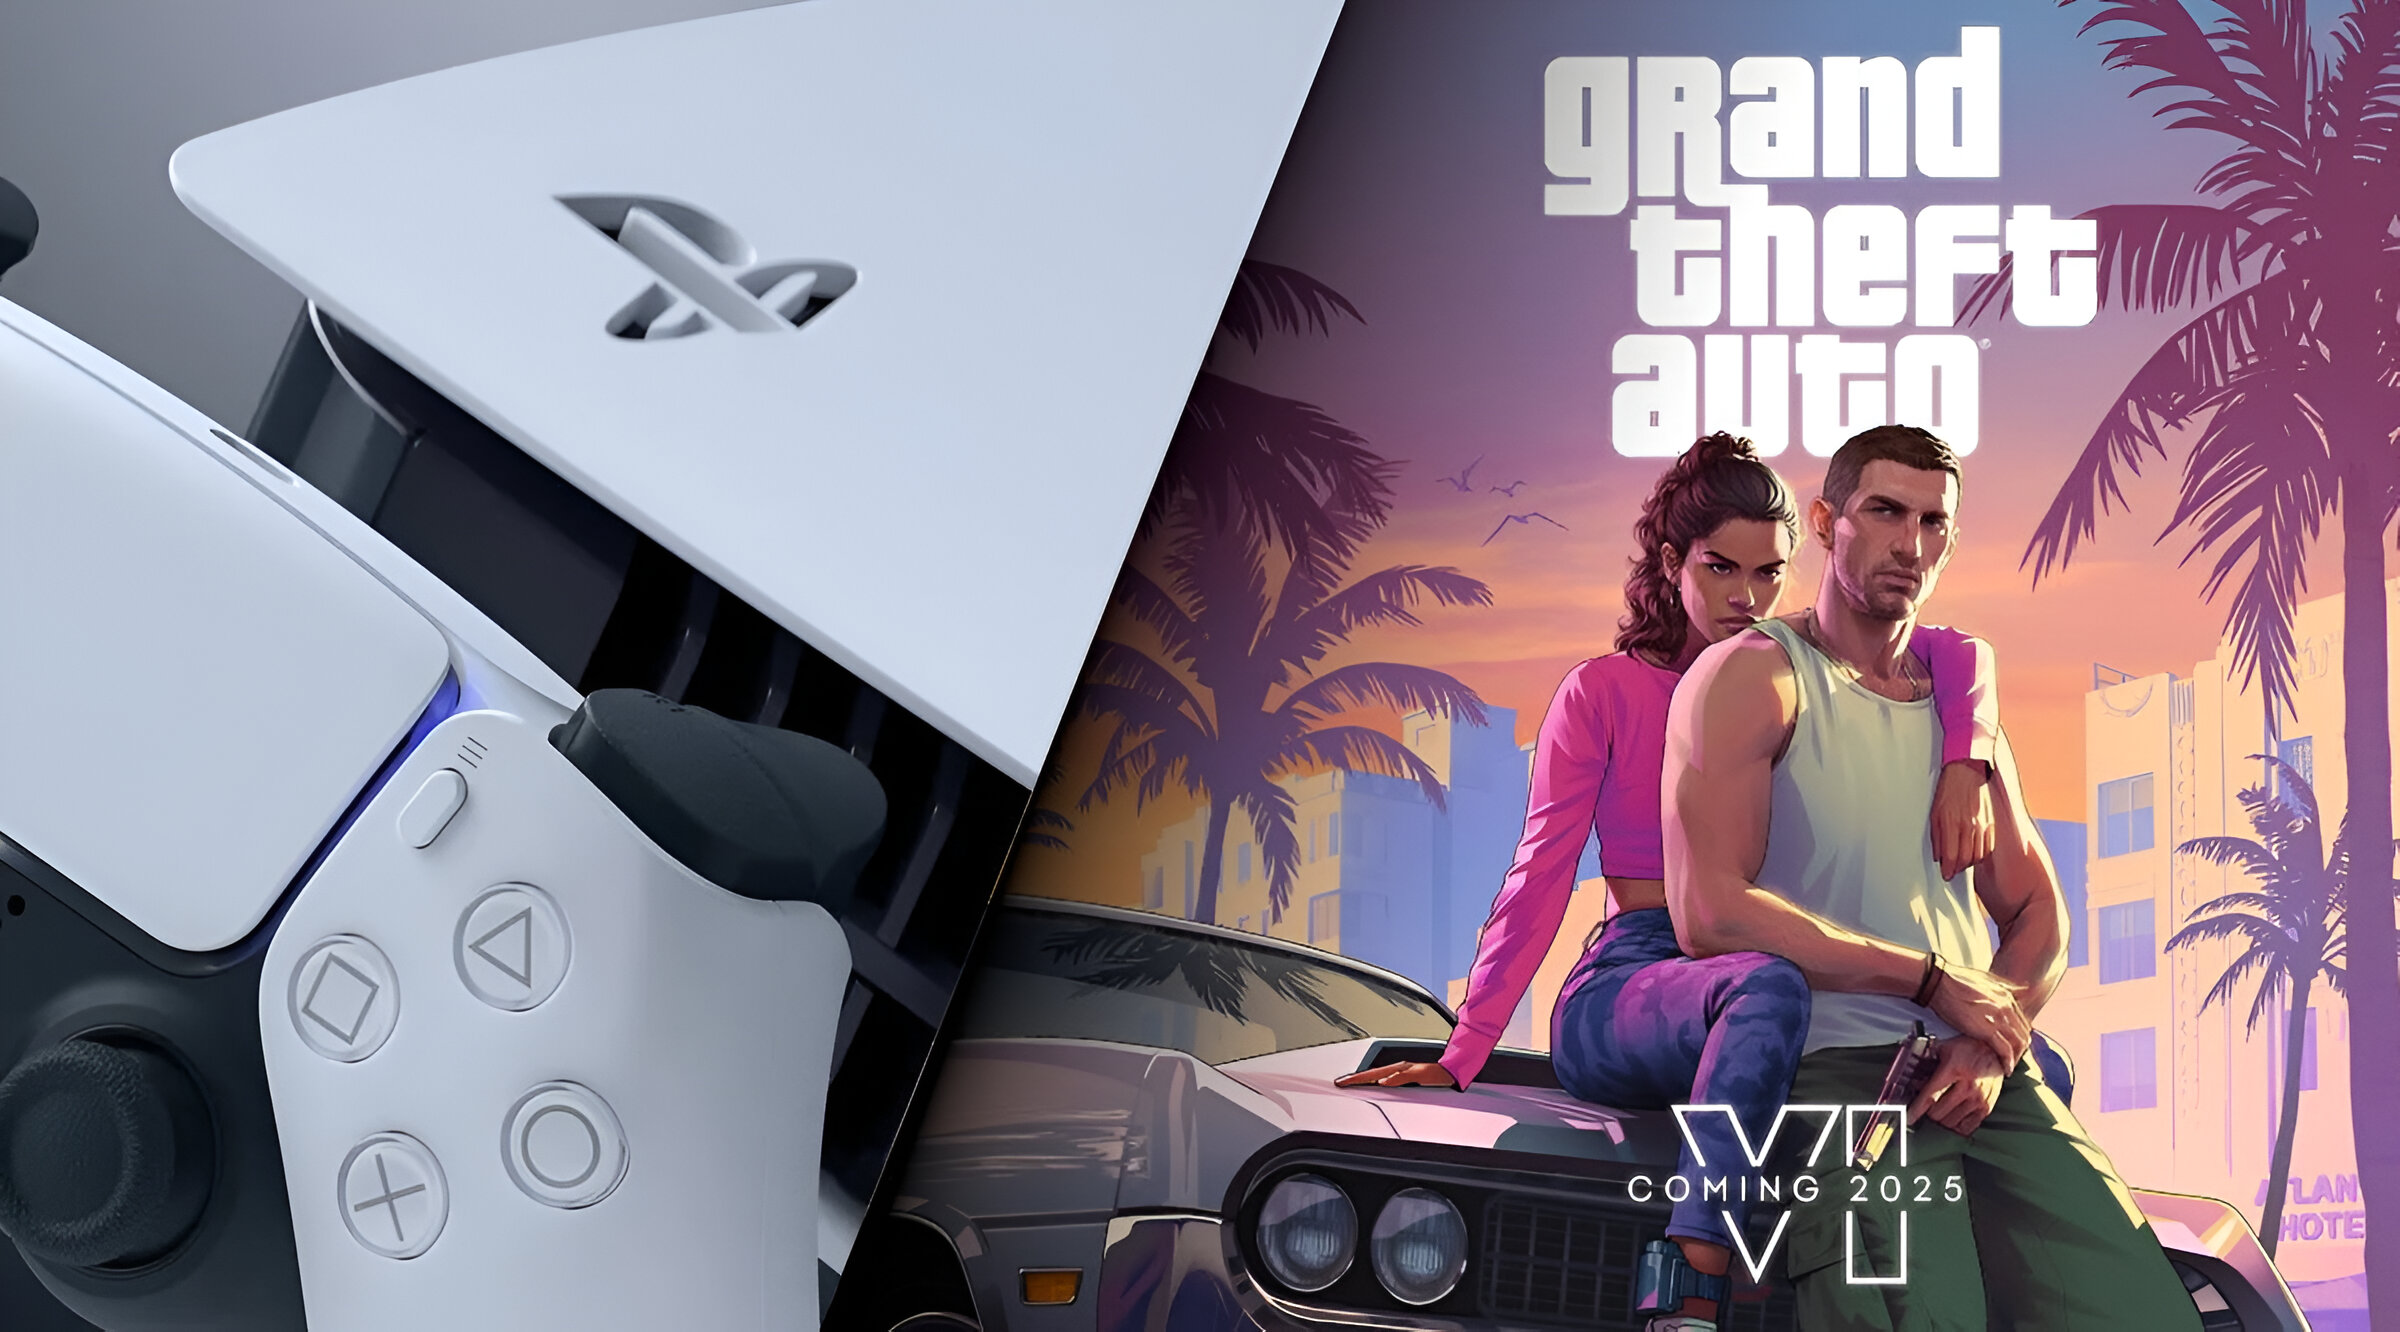 Zdjęcie konsoli do gier PS5 Pro i kontrolera na tle grafiki z gry "Grand Theft Auto" przedstawiającej dwie postacie siedzące na klasycznym samochodzie z palmami i zachodem słońca w tle oraz logo "Grand Theft Auto" i datą "Coming 2025".